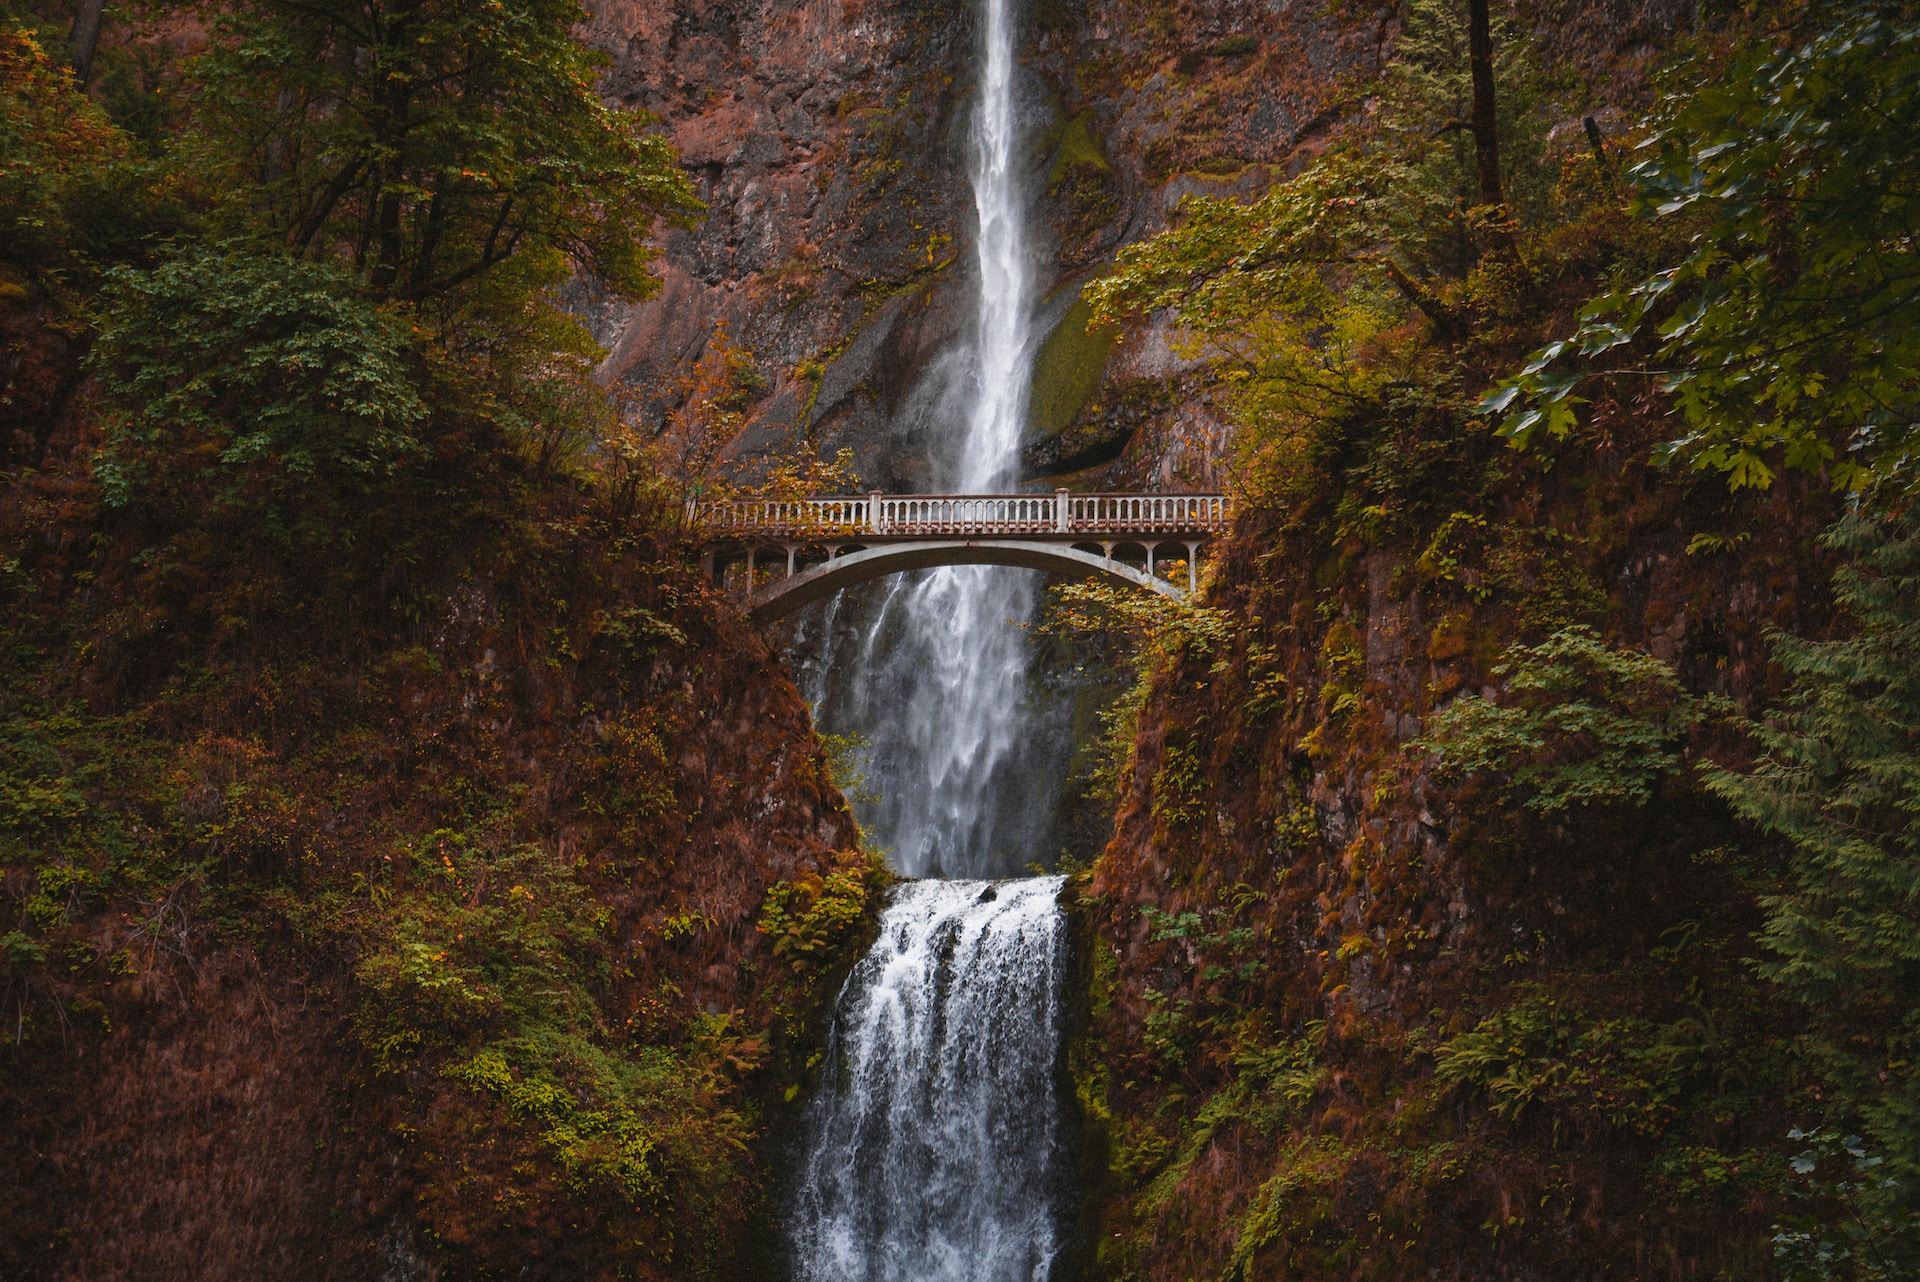 Multnomah Falls outside of Portland, Oregon.